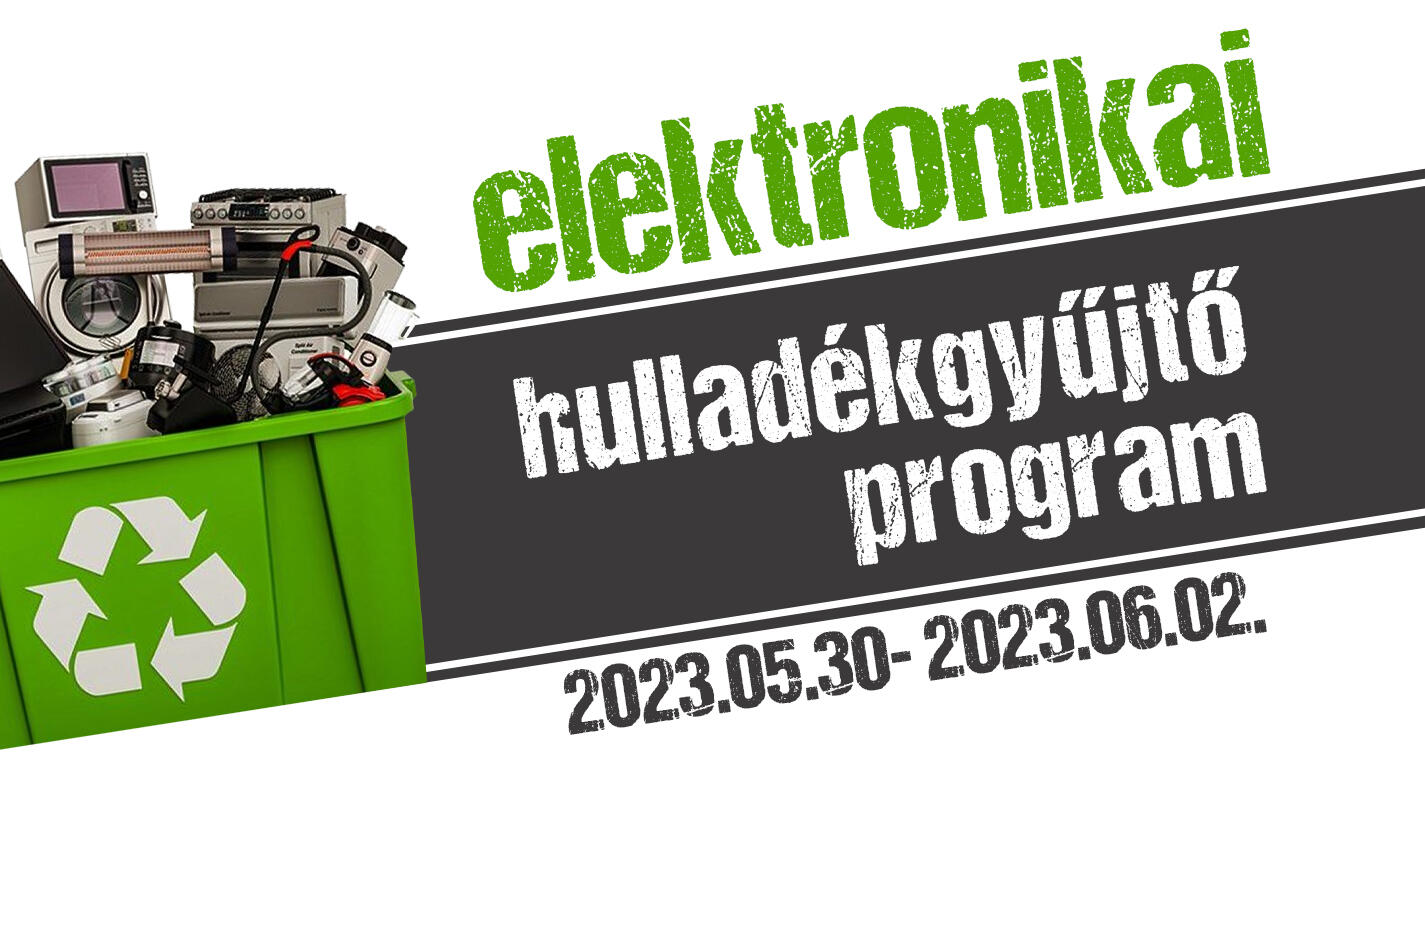 elektronikai_hulladekgyujtes_2023